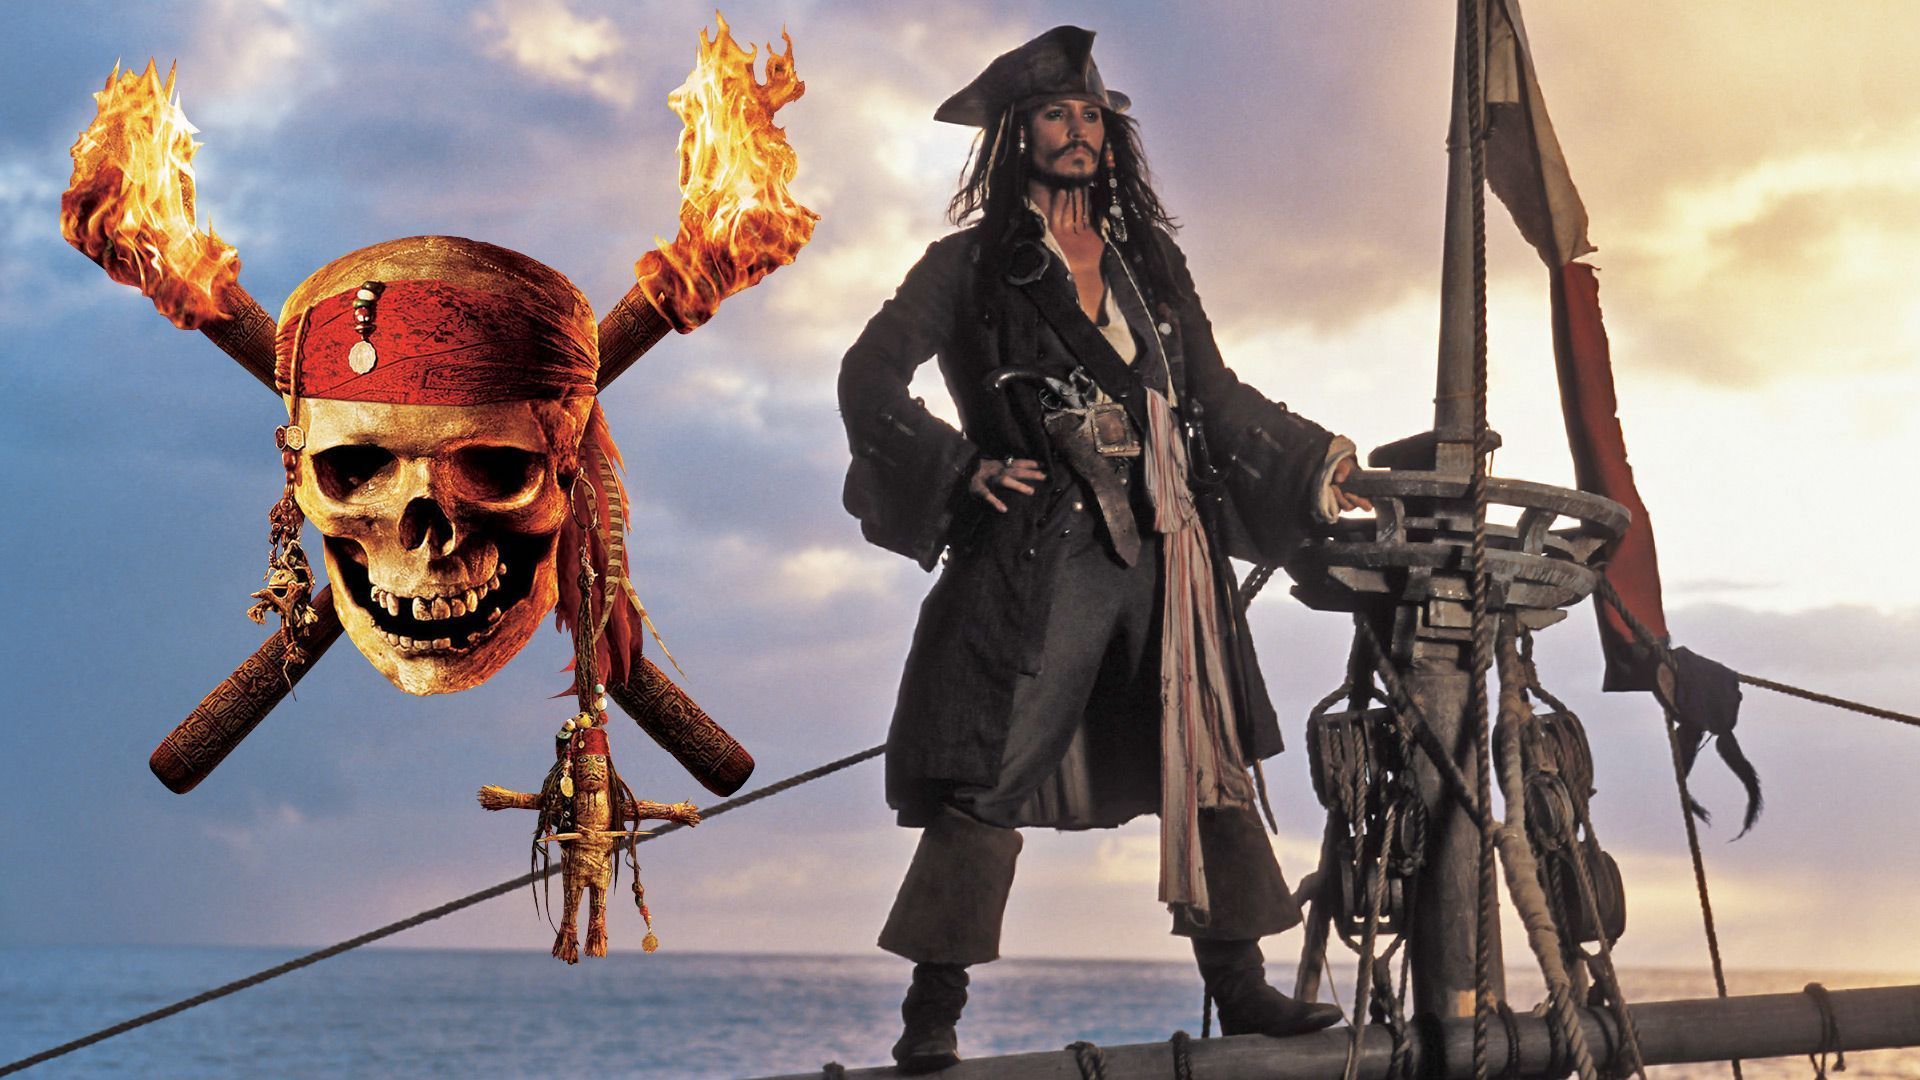 Piratas del Caribe: Éstos son los motivos de Disney para el reinicio -  Vandal Random